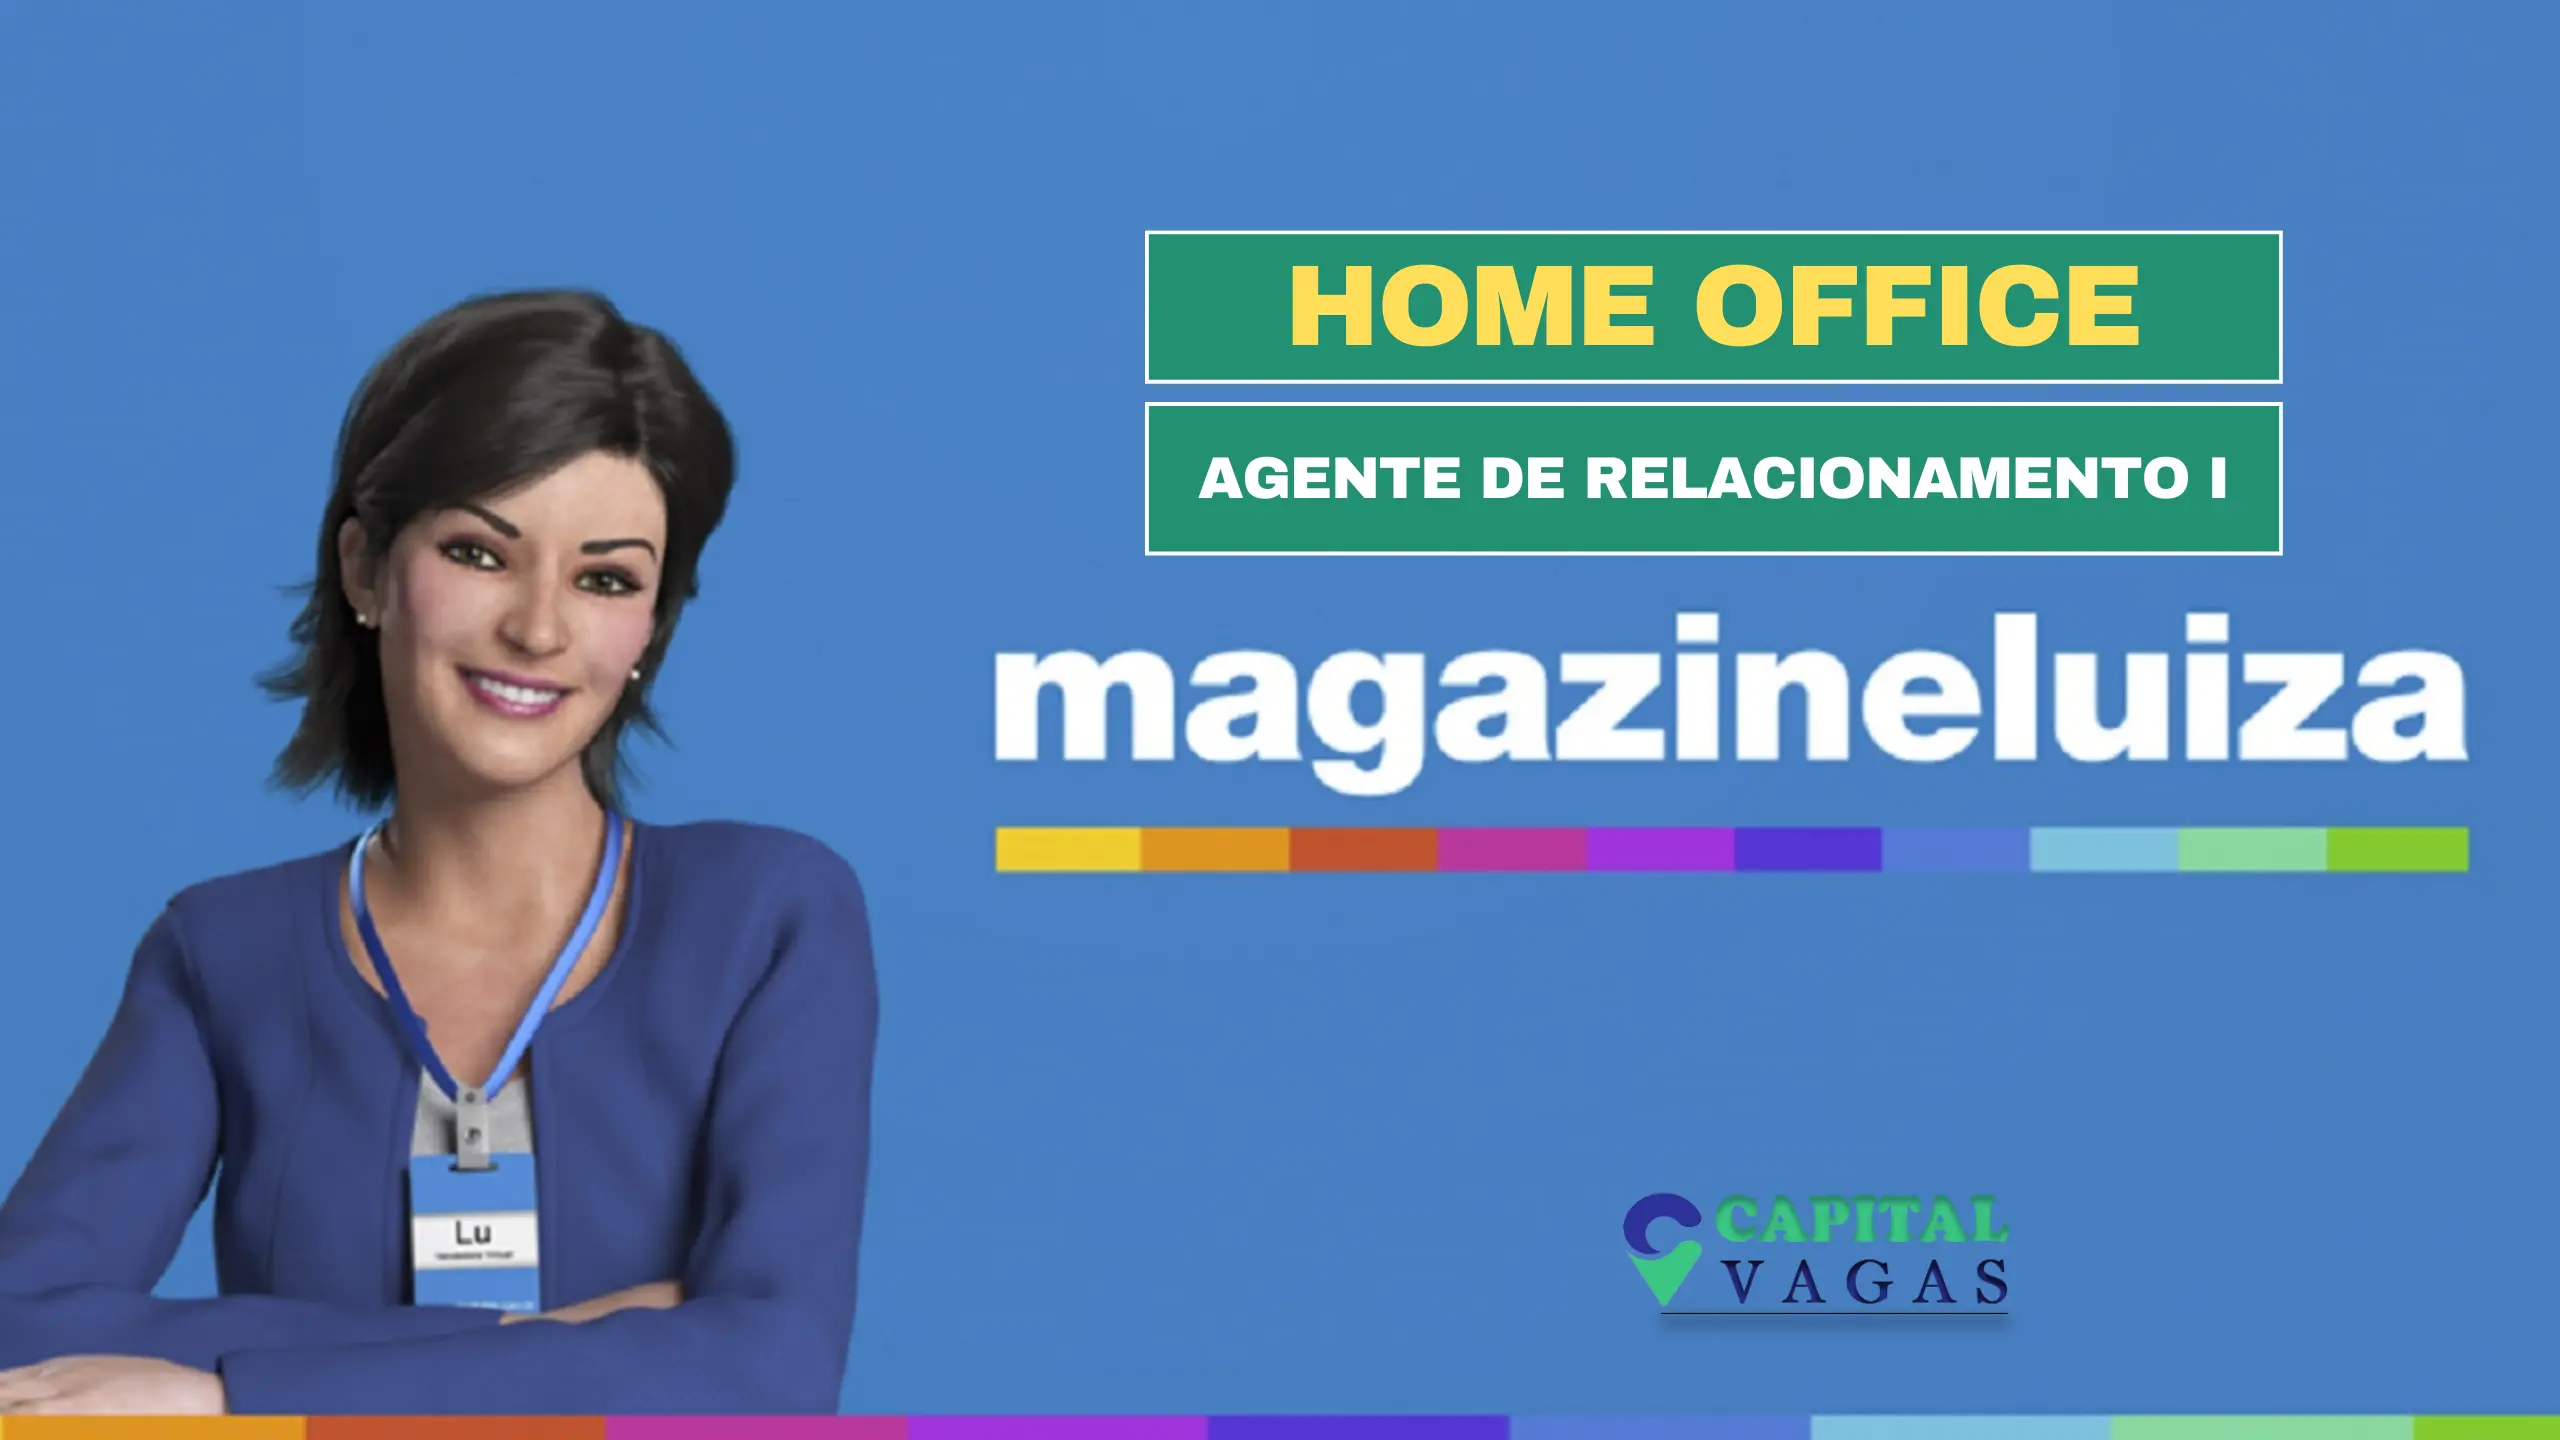 Magazine Luiza abre vagas HOME OFFICE para Agente de Relacionamento I